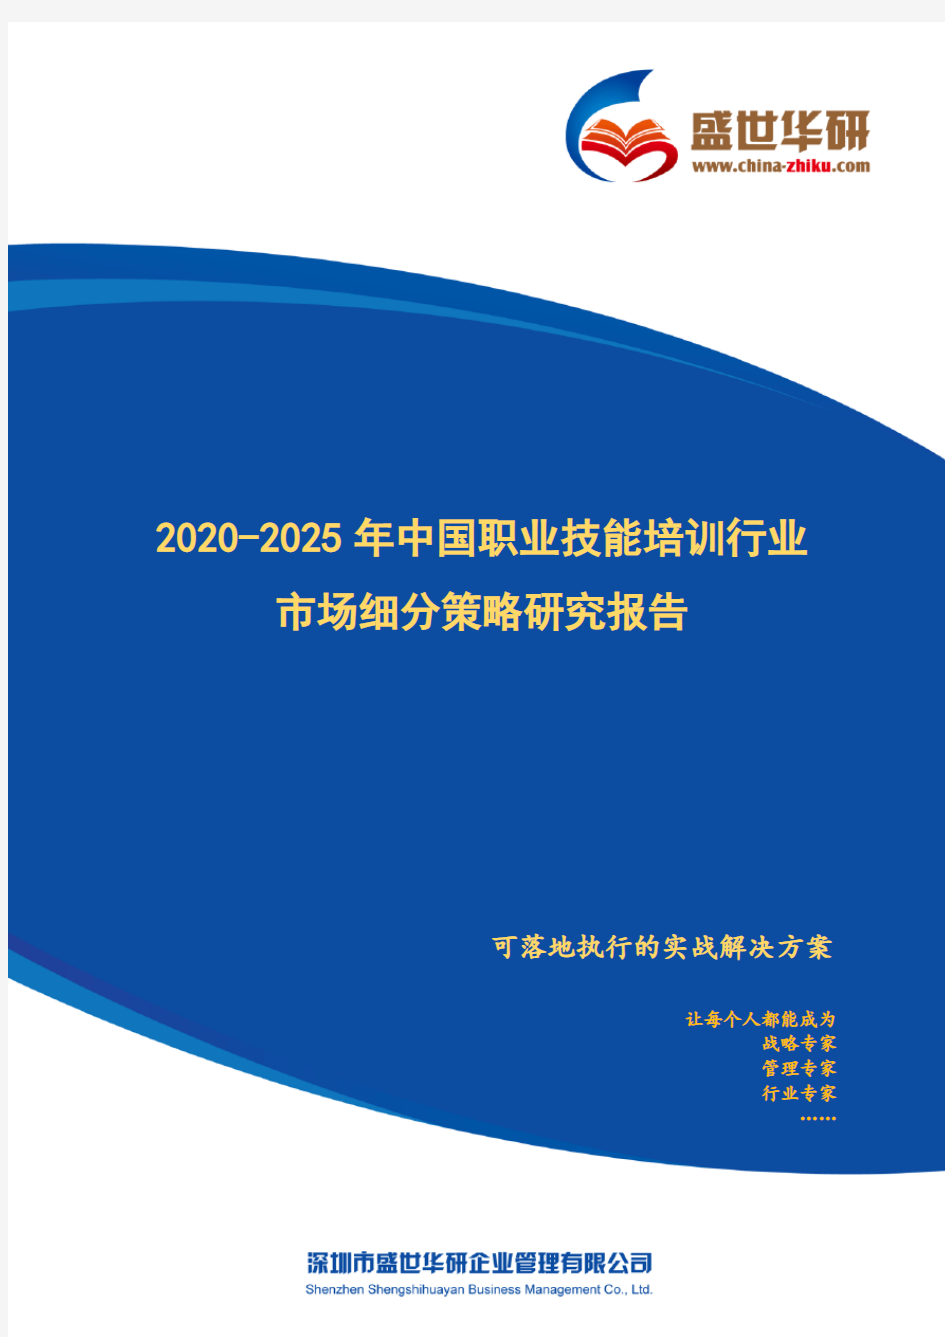 【完整版】2020-2025年中国职业技能培训行业市场细分策略研究报告